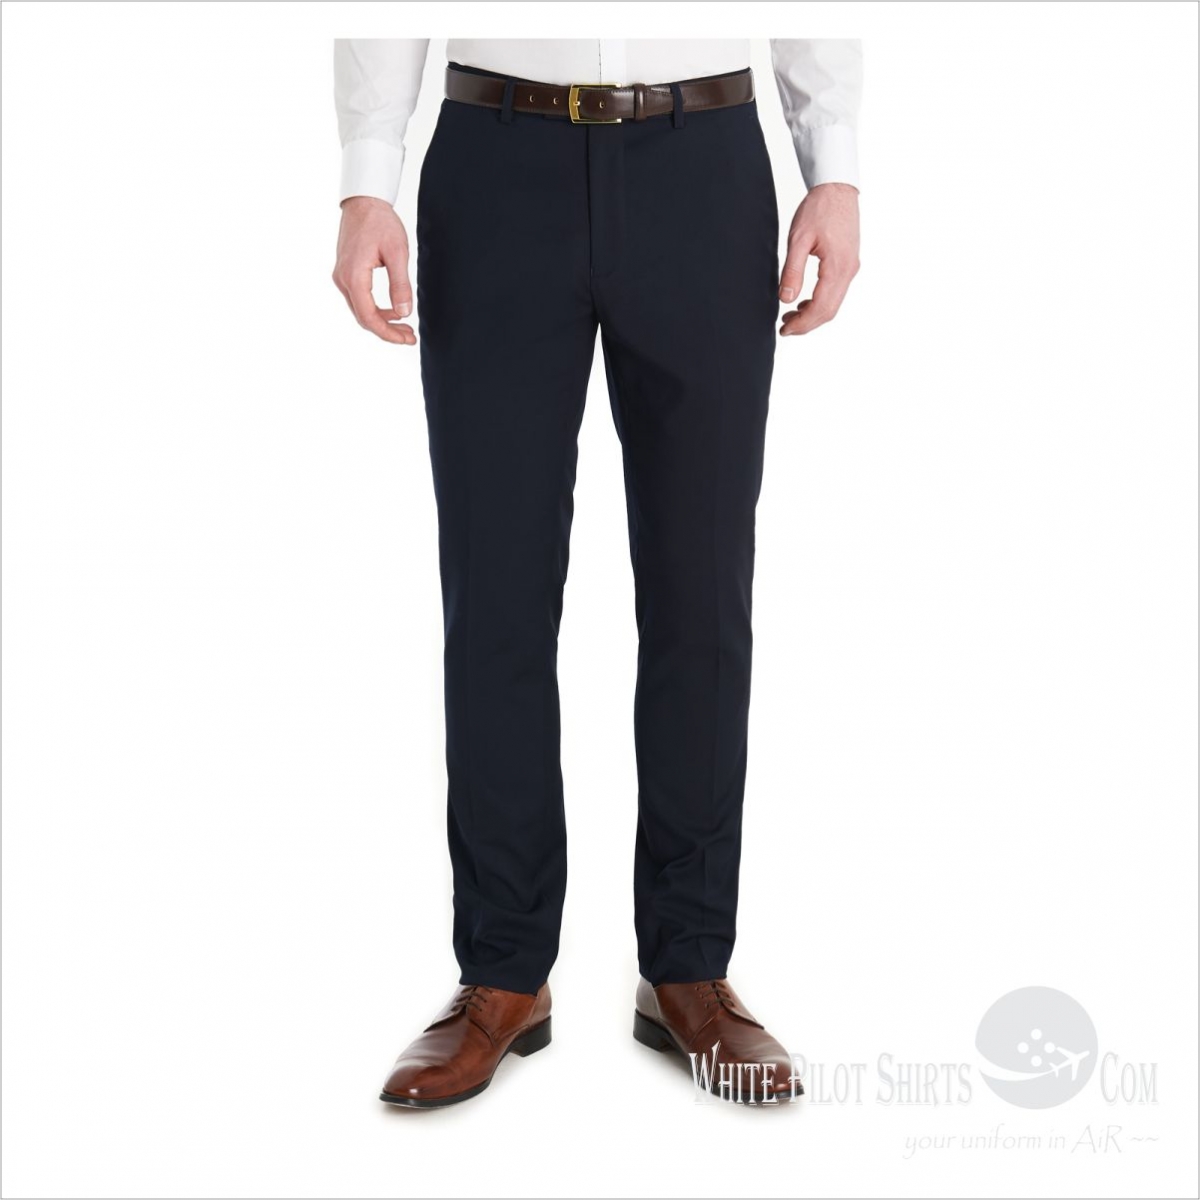 Woollen Trousers Navy - 100% Wool | Trousers | Men's Trousers White ...